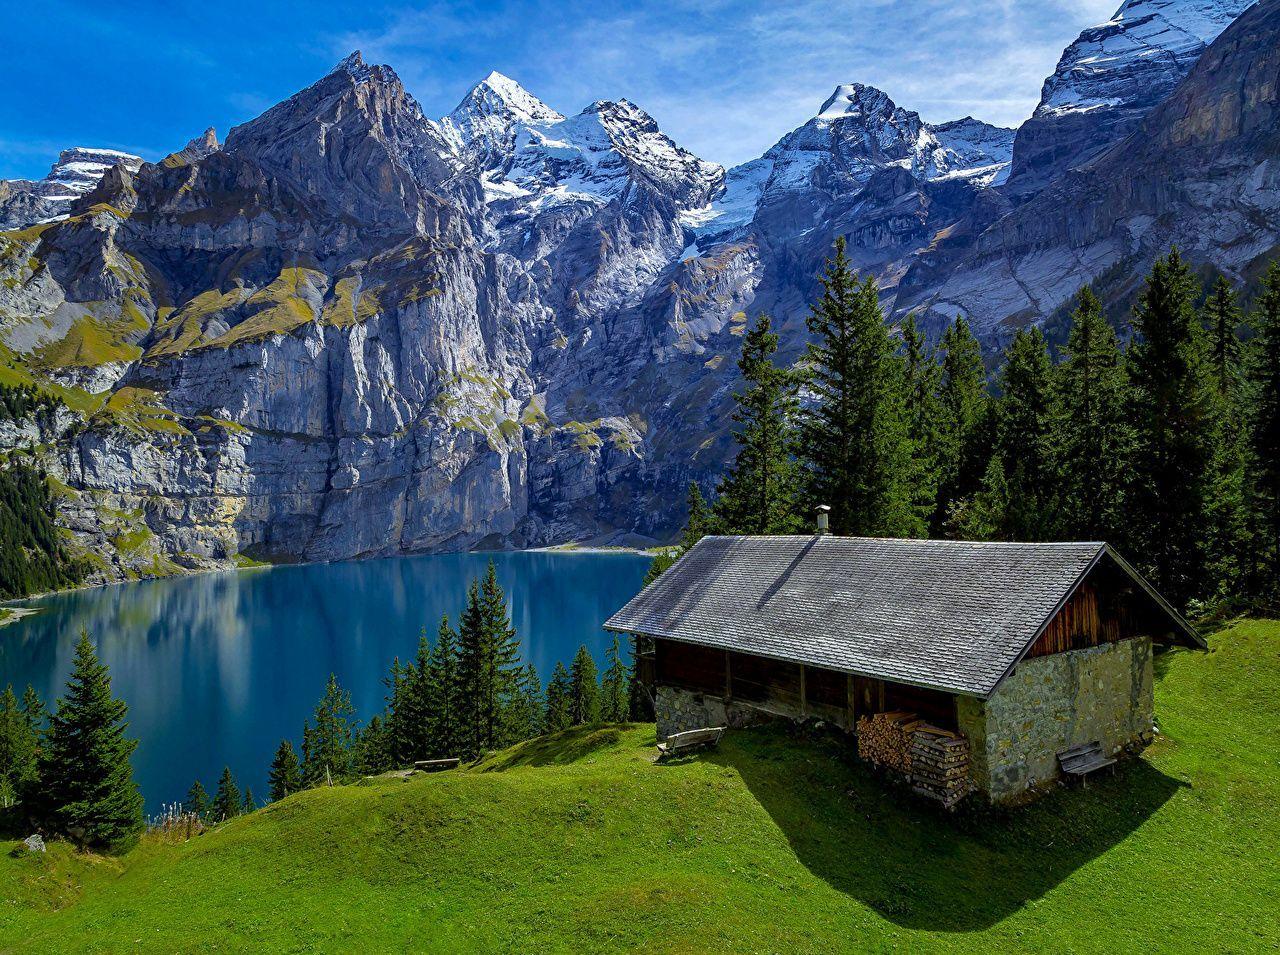 Switzerland 4k Wallpapers - Top Free Switzerland 4k Backgrounds